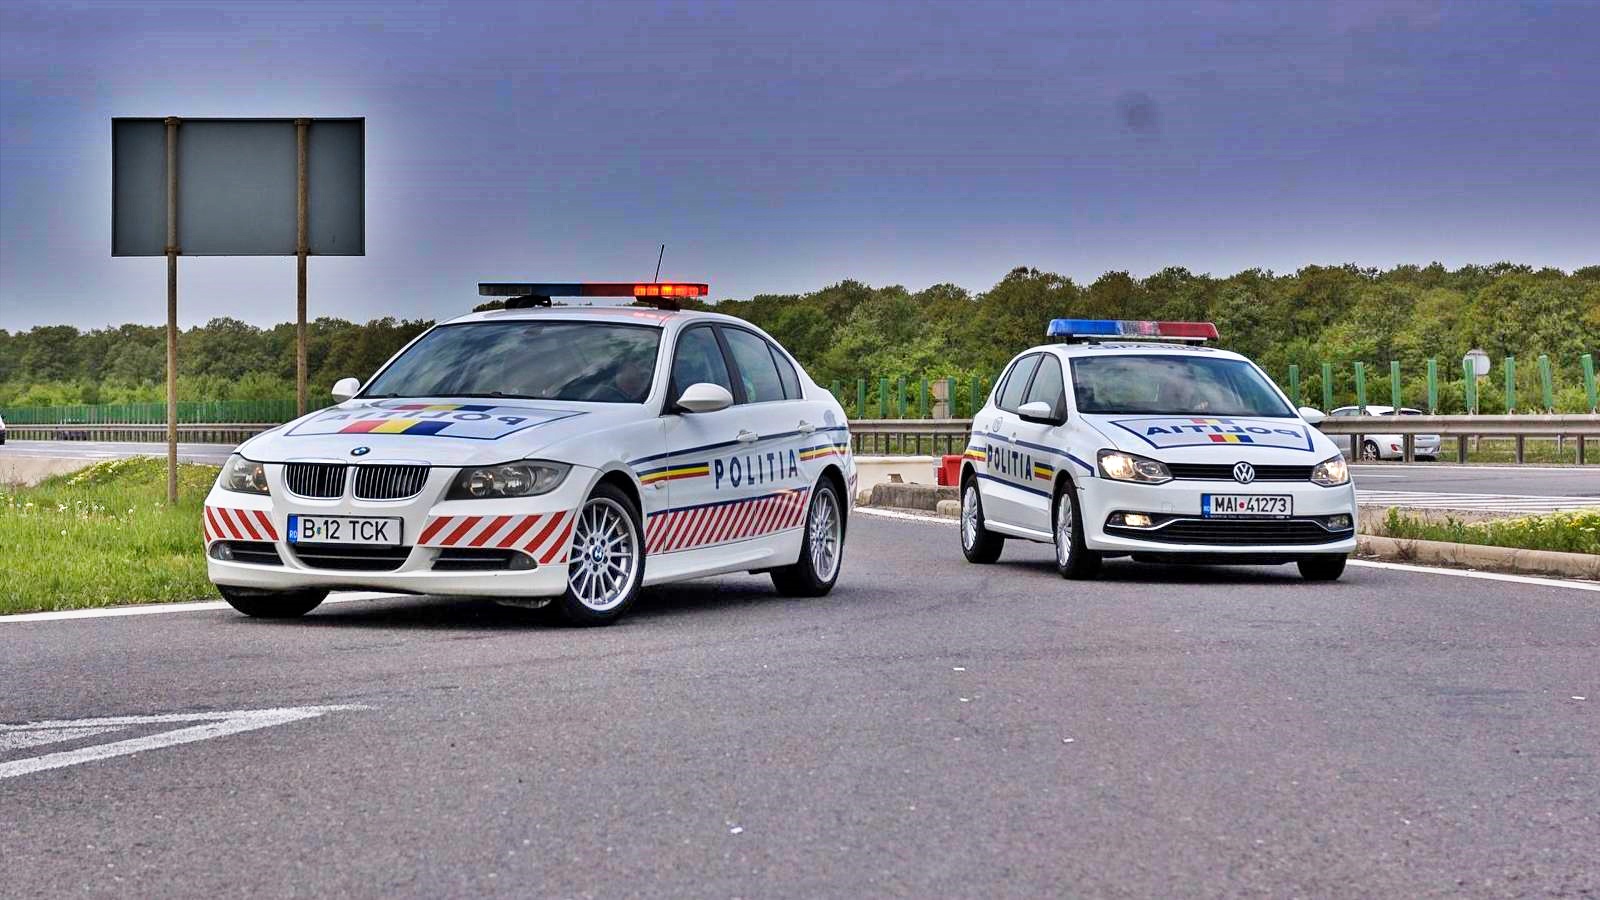 Radarpistole der rumänischen Polizei